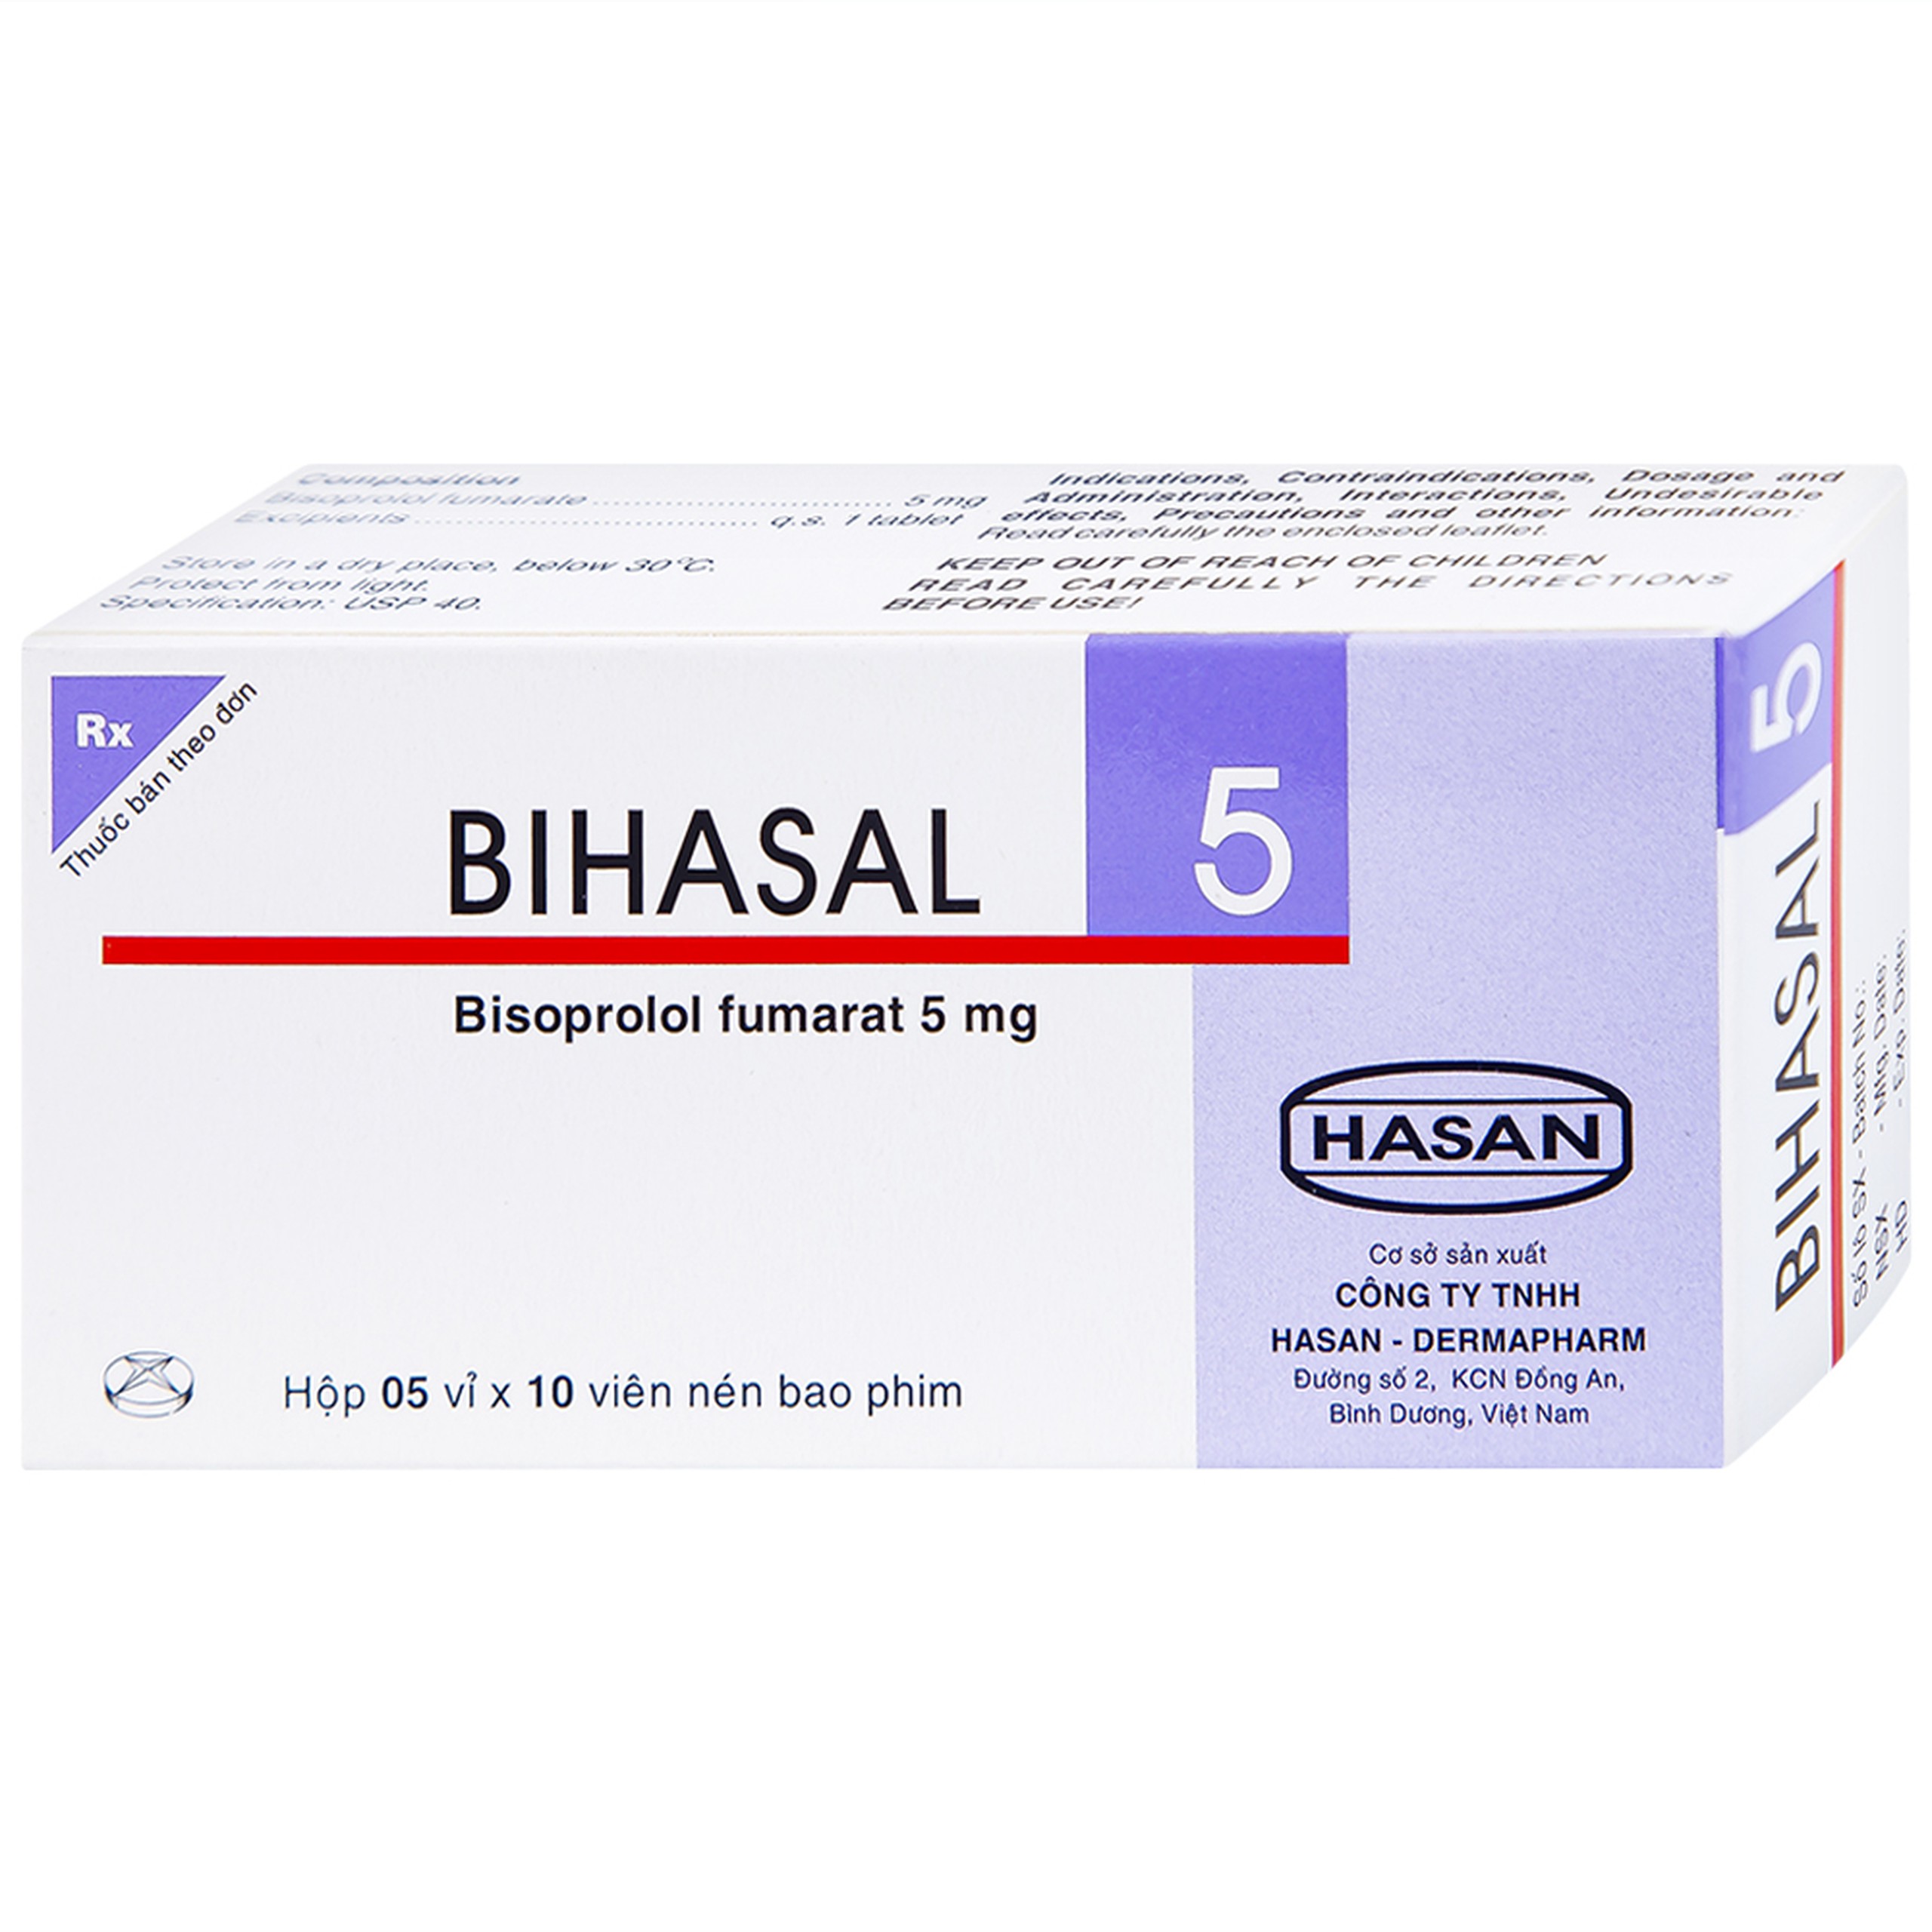 Thuốc Bihasal 5mg Hasan điều trị tăng huyết áp, đau thắt ngực, suy tim mạn tính ổn định (5 vỉ x 10 viên)